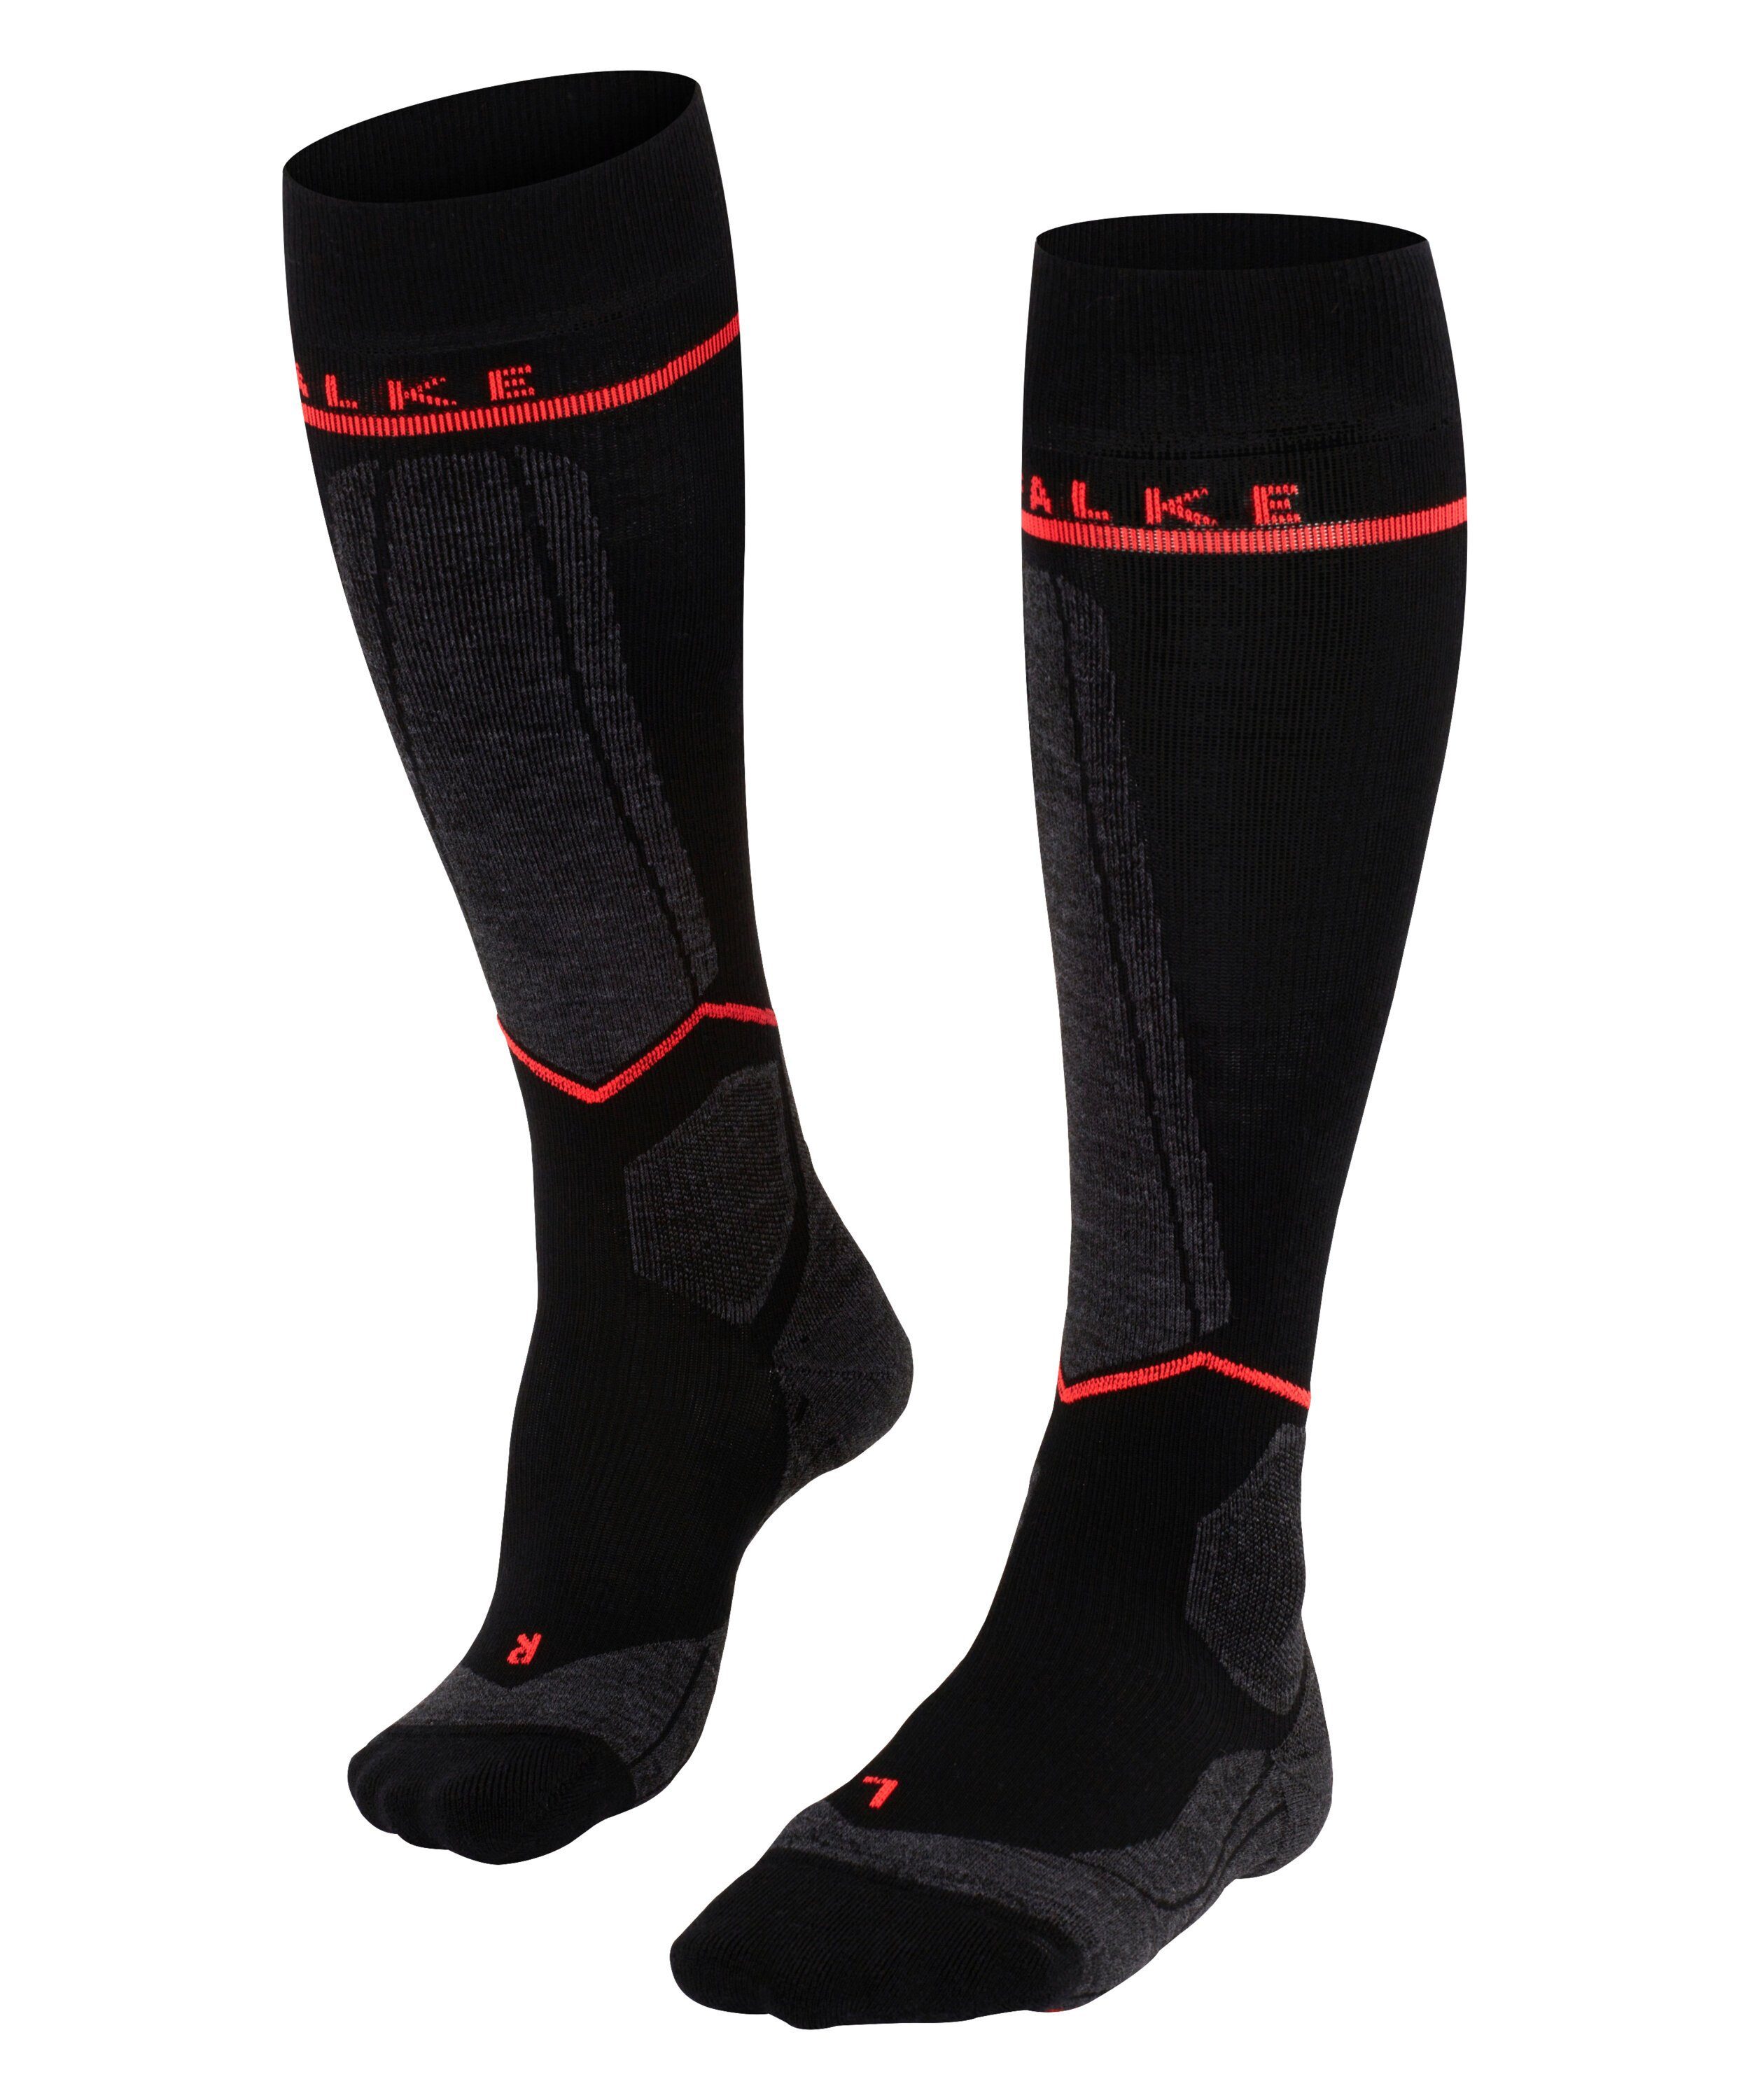 FALKE Skisocken SK Compression Wool (1-Paar) für eine bessere Zirkulation und optimierte Passform black-neon red (3178)